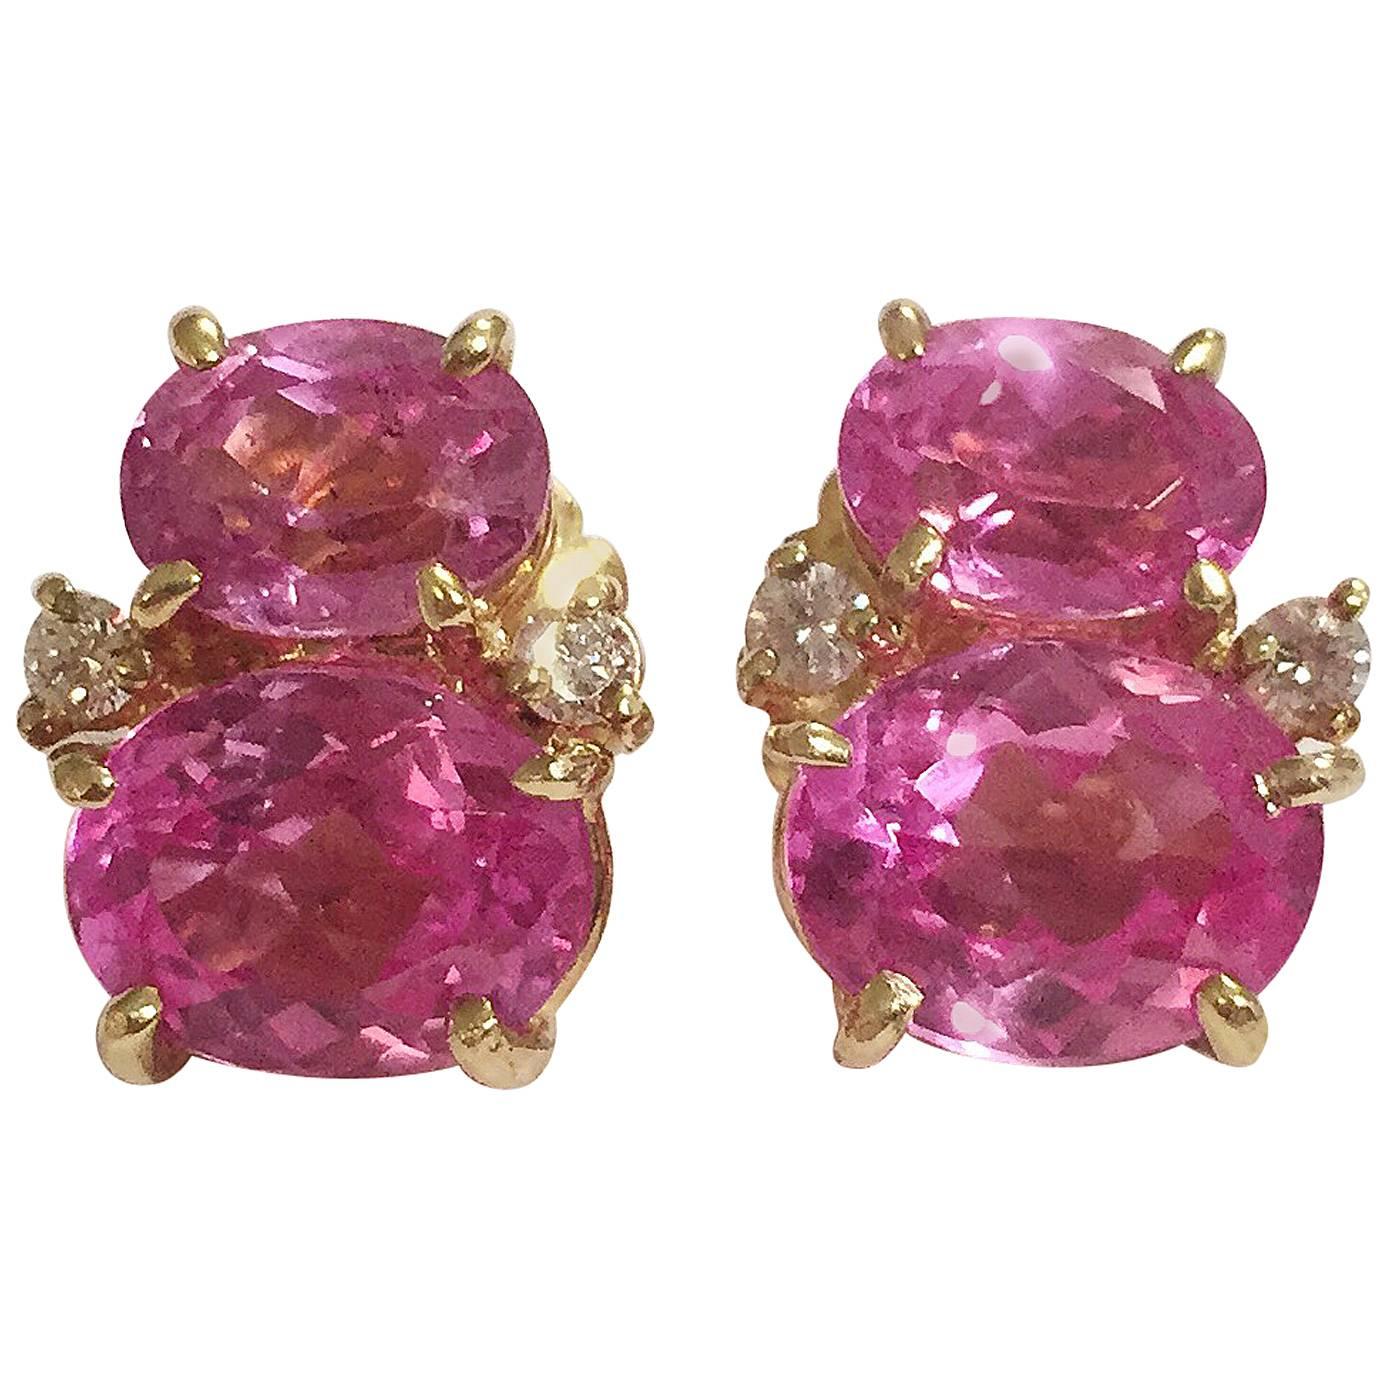 Die Miniatur-Miniatur  GUM DROPTM Ohrringe mit zwei getöntem rosa Topas und Diamanten